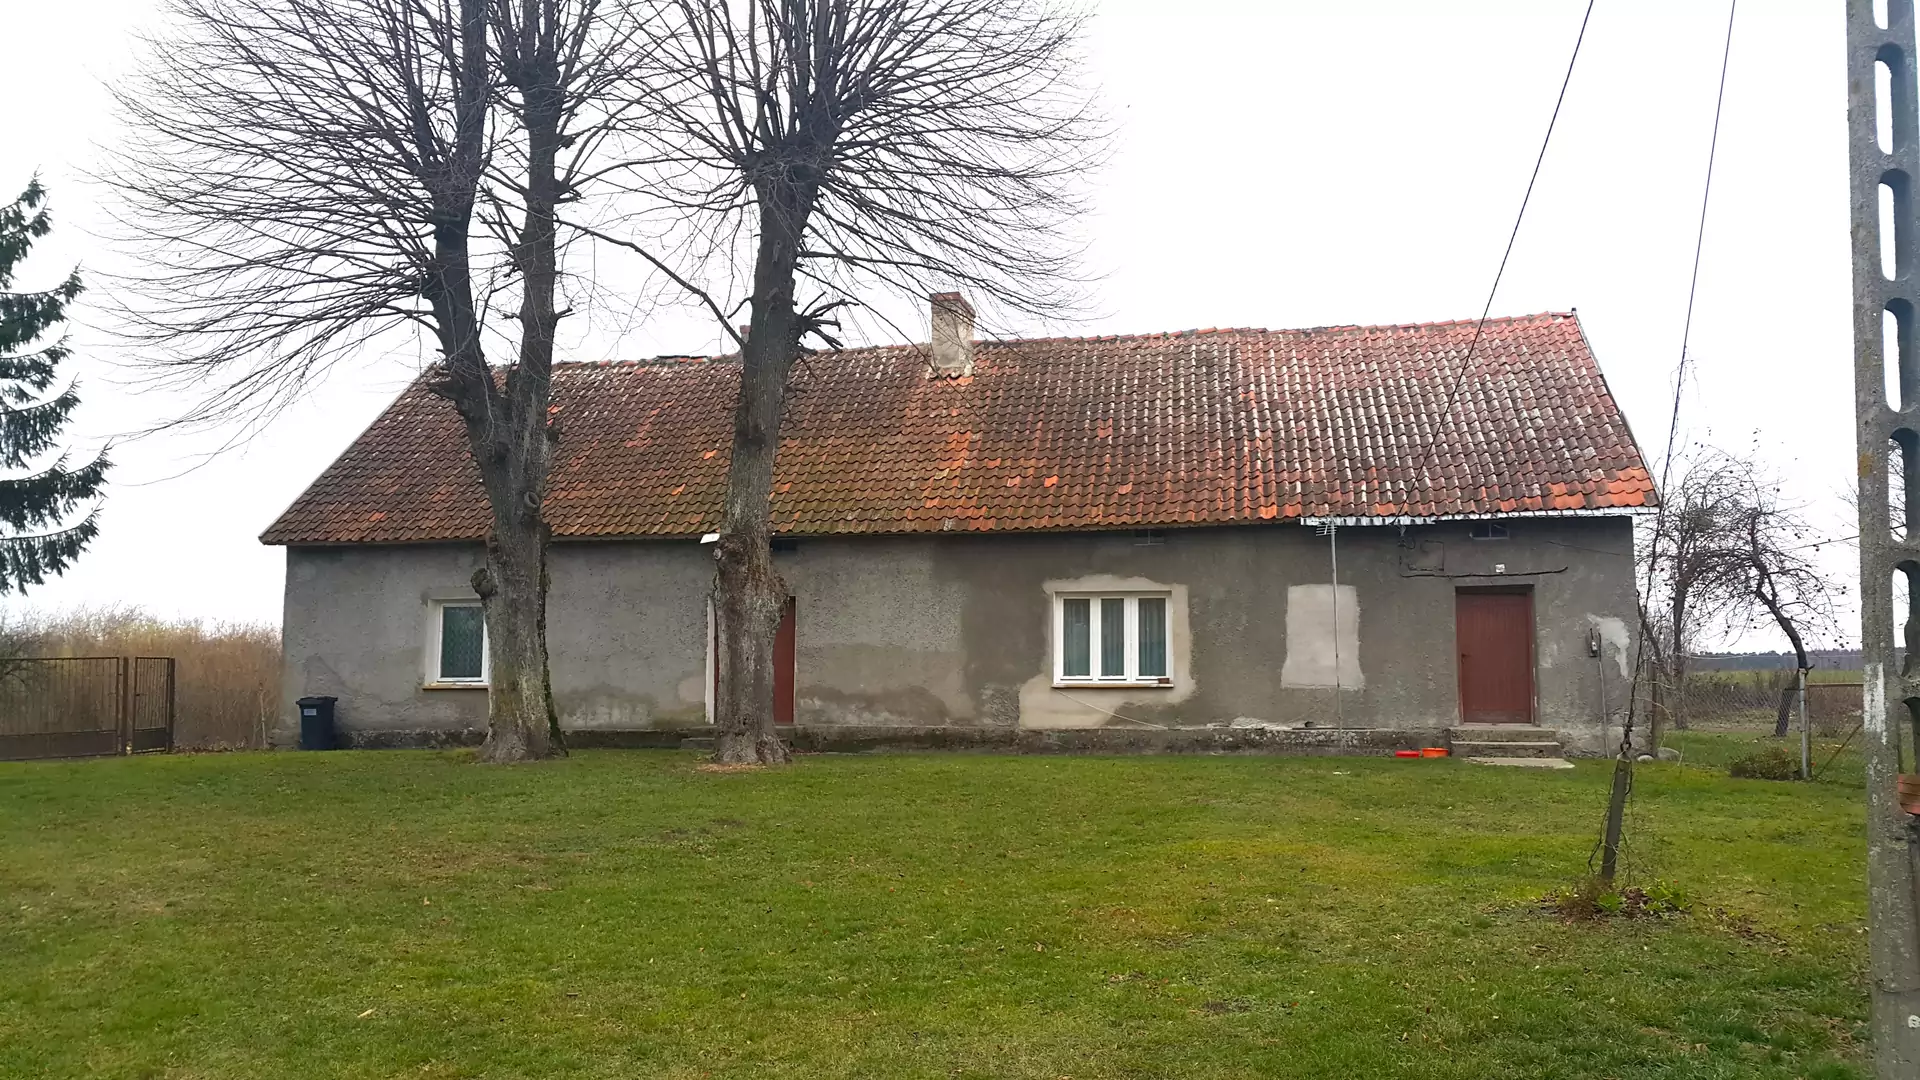 Polacy kupili poniemiecki dom. "Patrzyli na nas ze zdziwieniem"